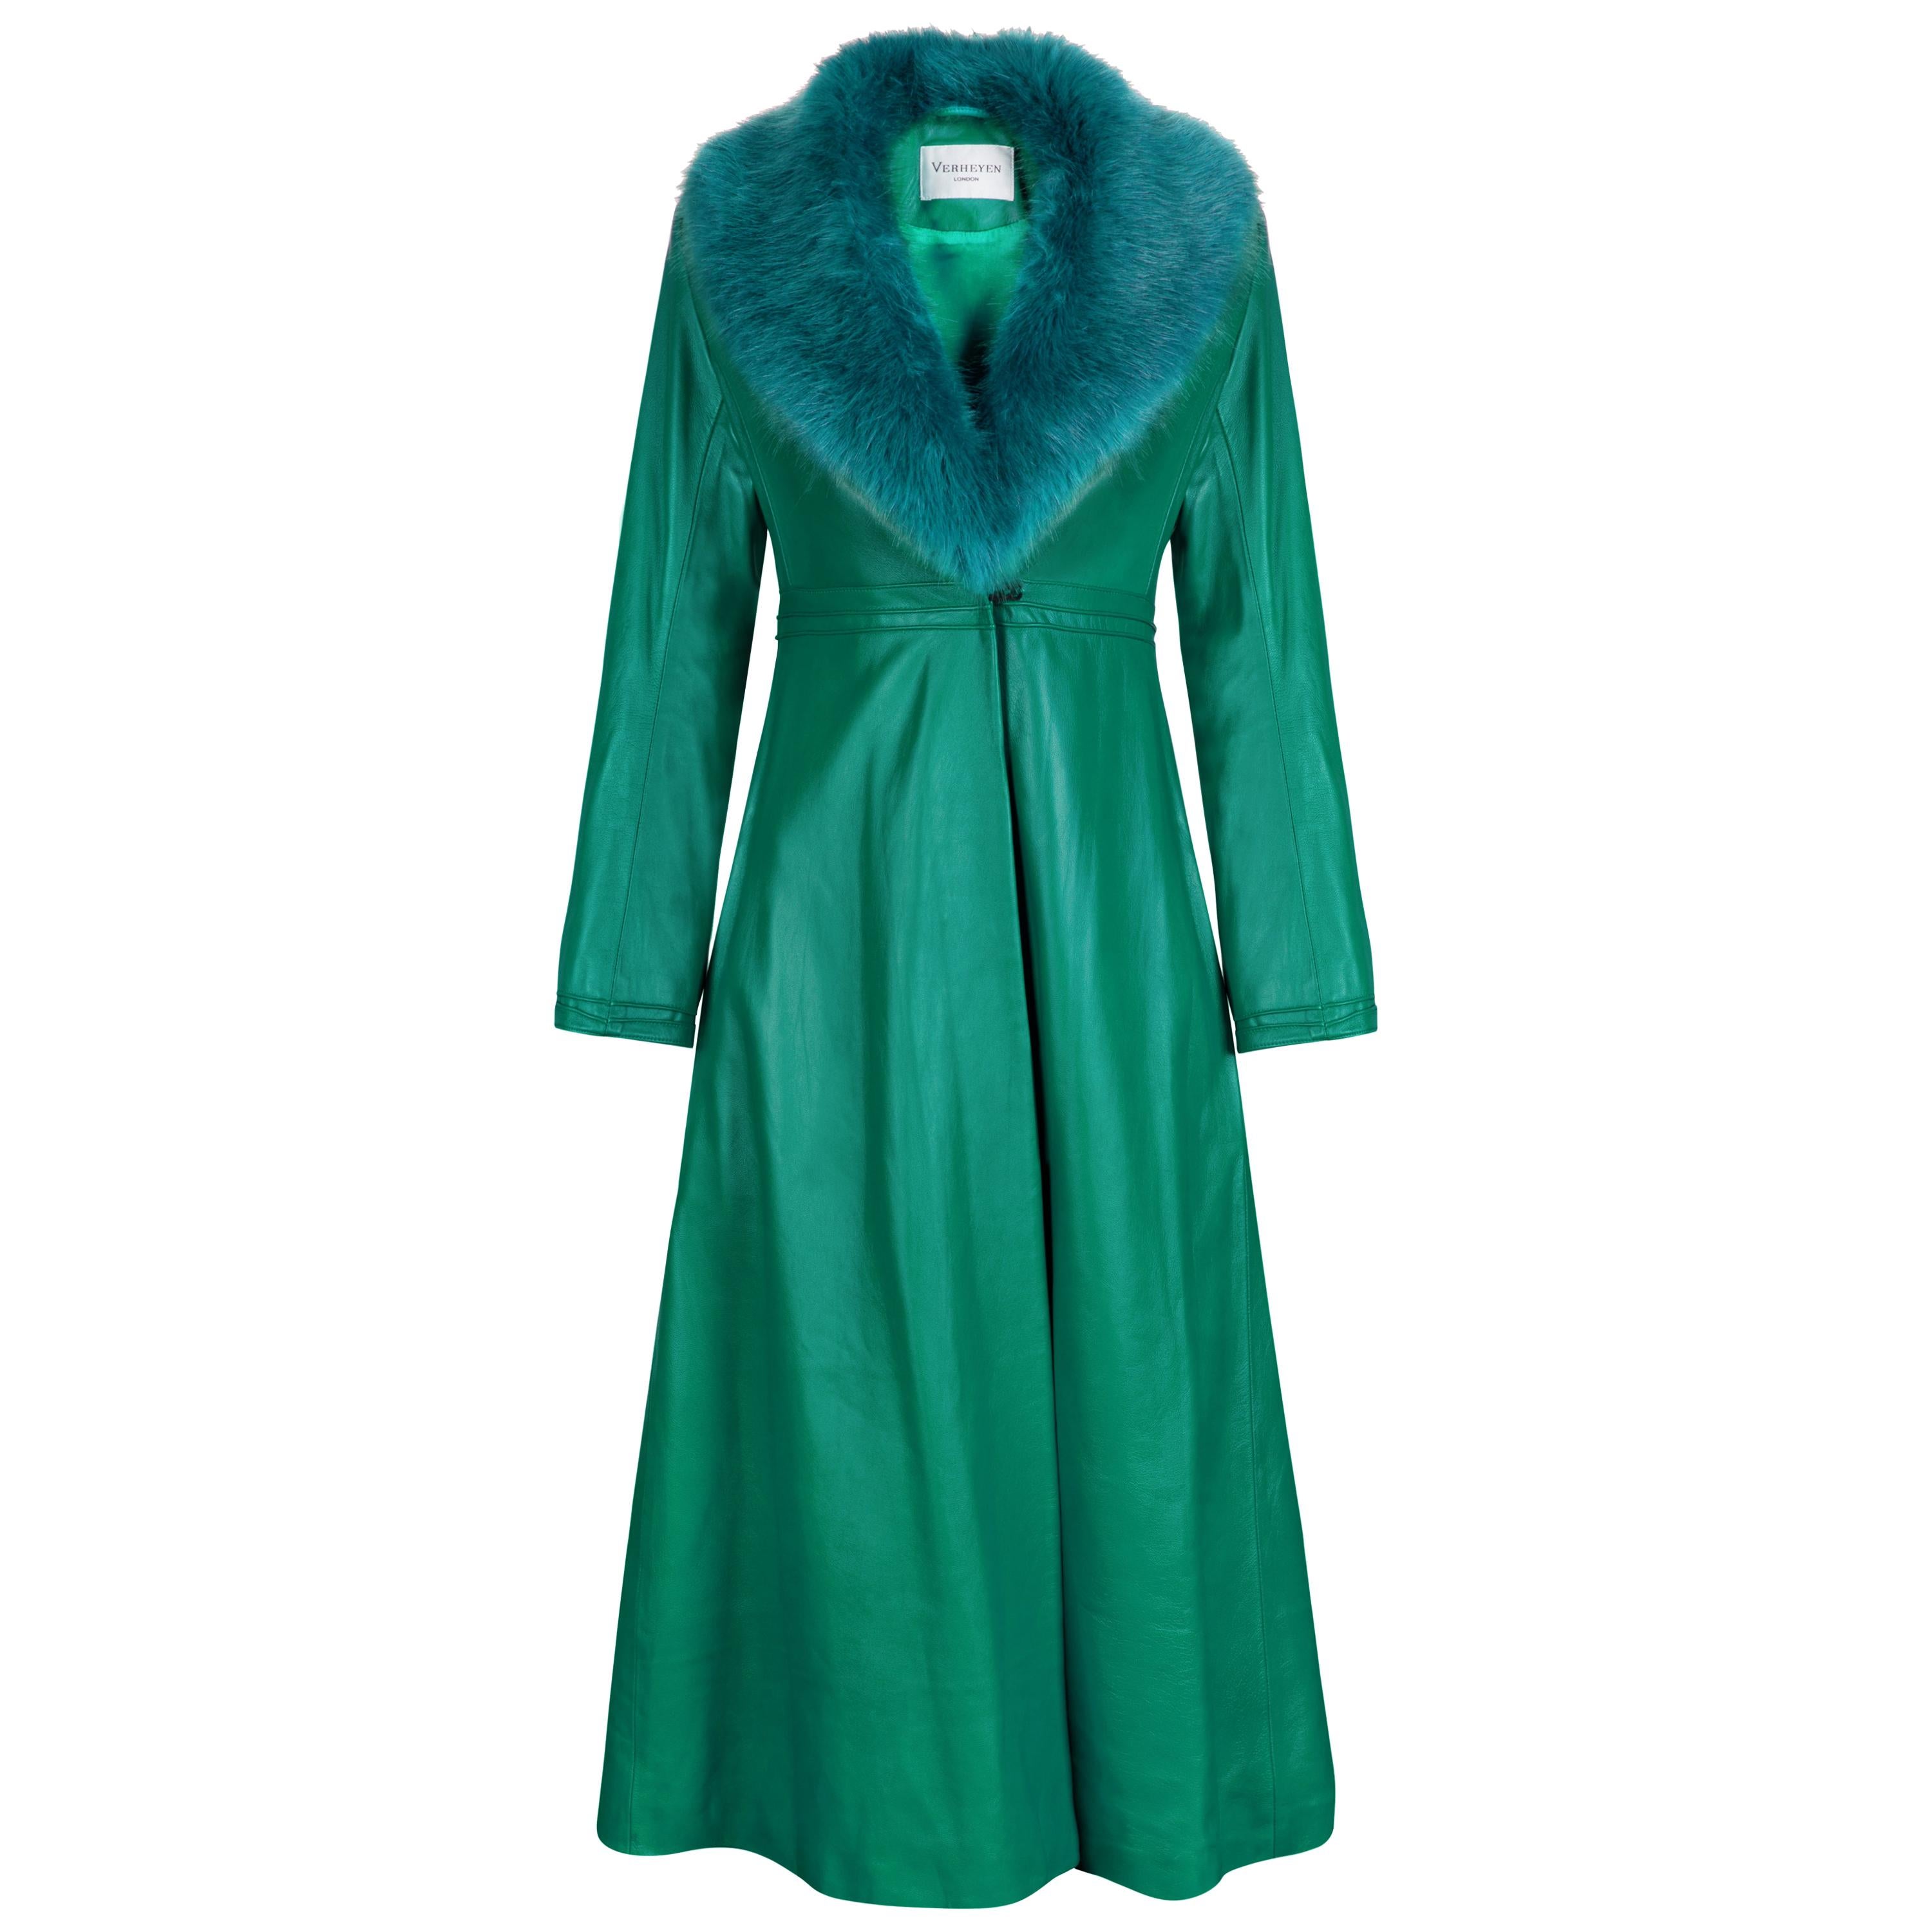 Verheyen London Edward Leather Coat in Green & Green Faux Fur - Size 10  UK 